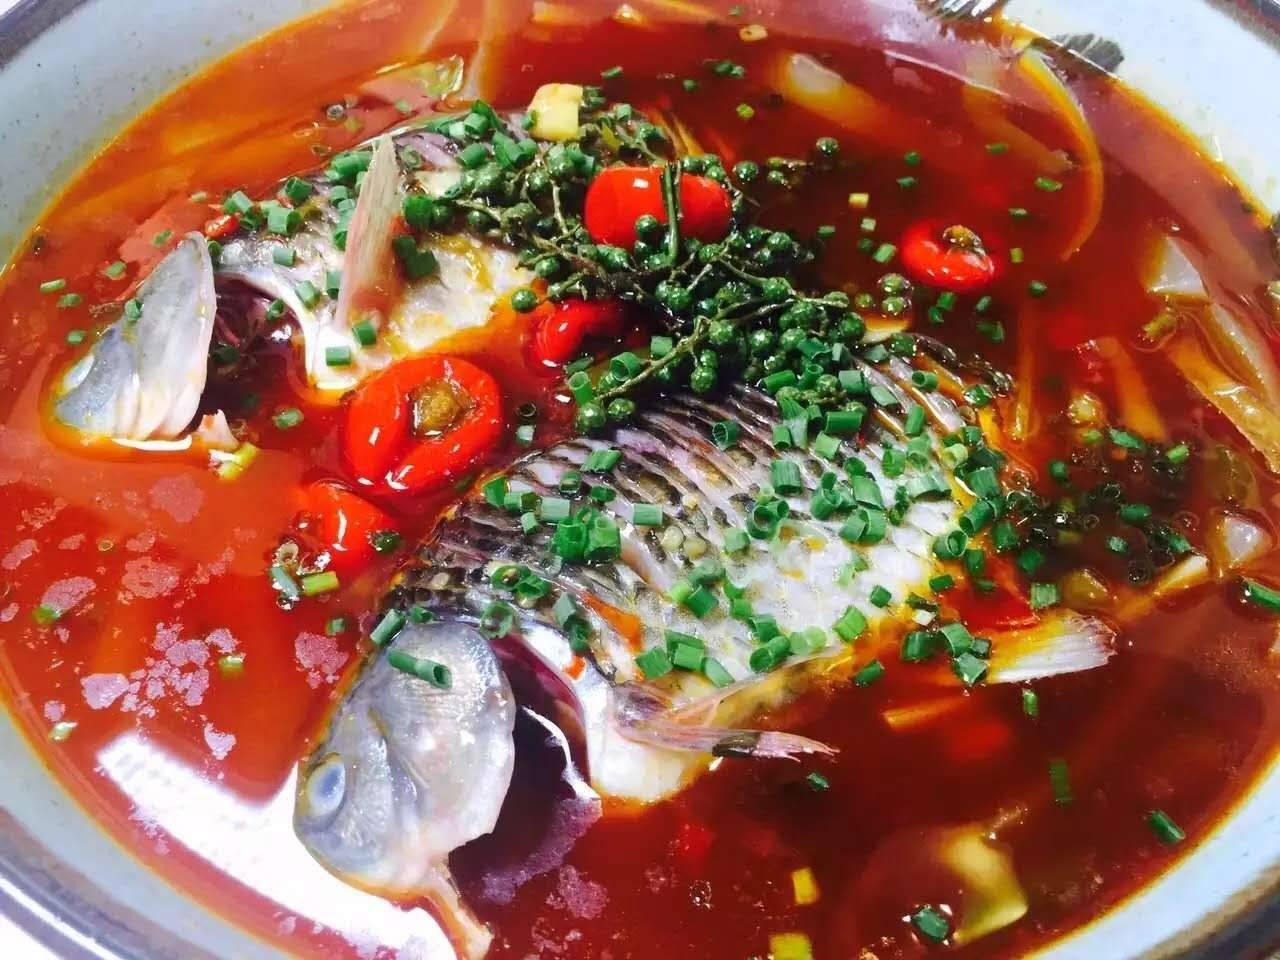 招牌泡椒鲫鱼 那种鱼肉淹没在泡椒汤汁中 吸收了泡椒精华 酸辣不燥